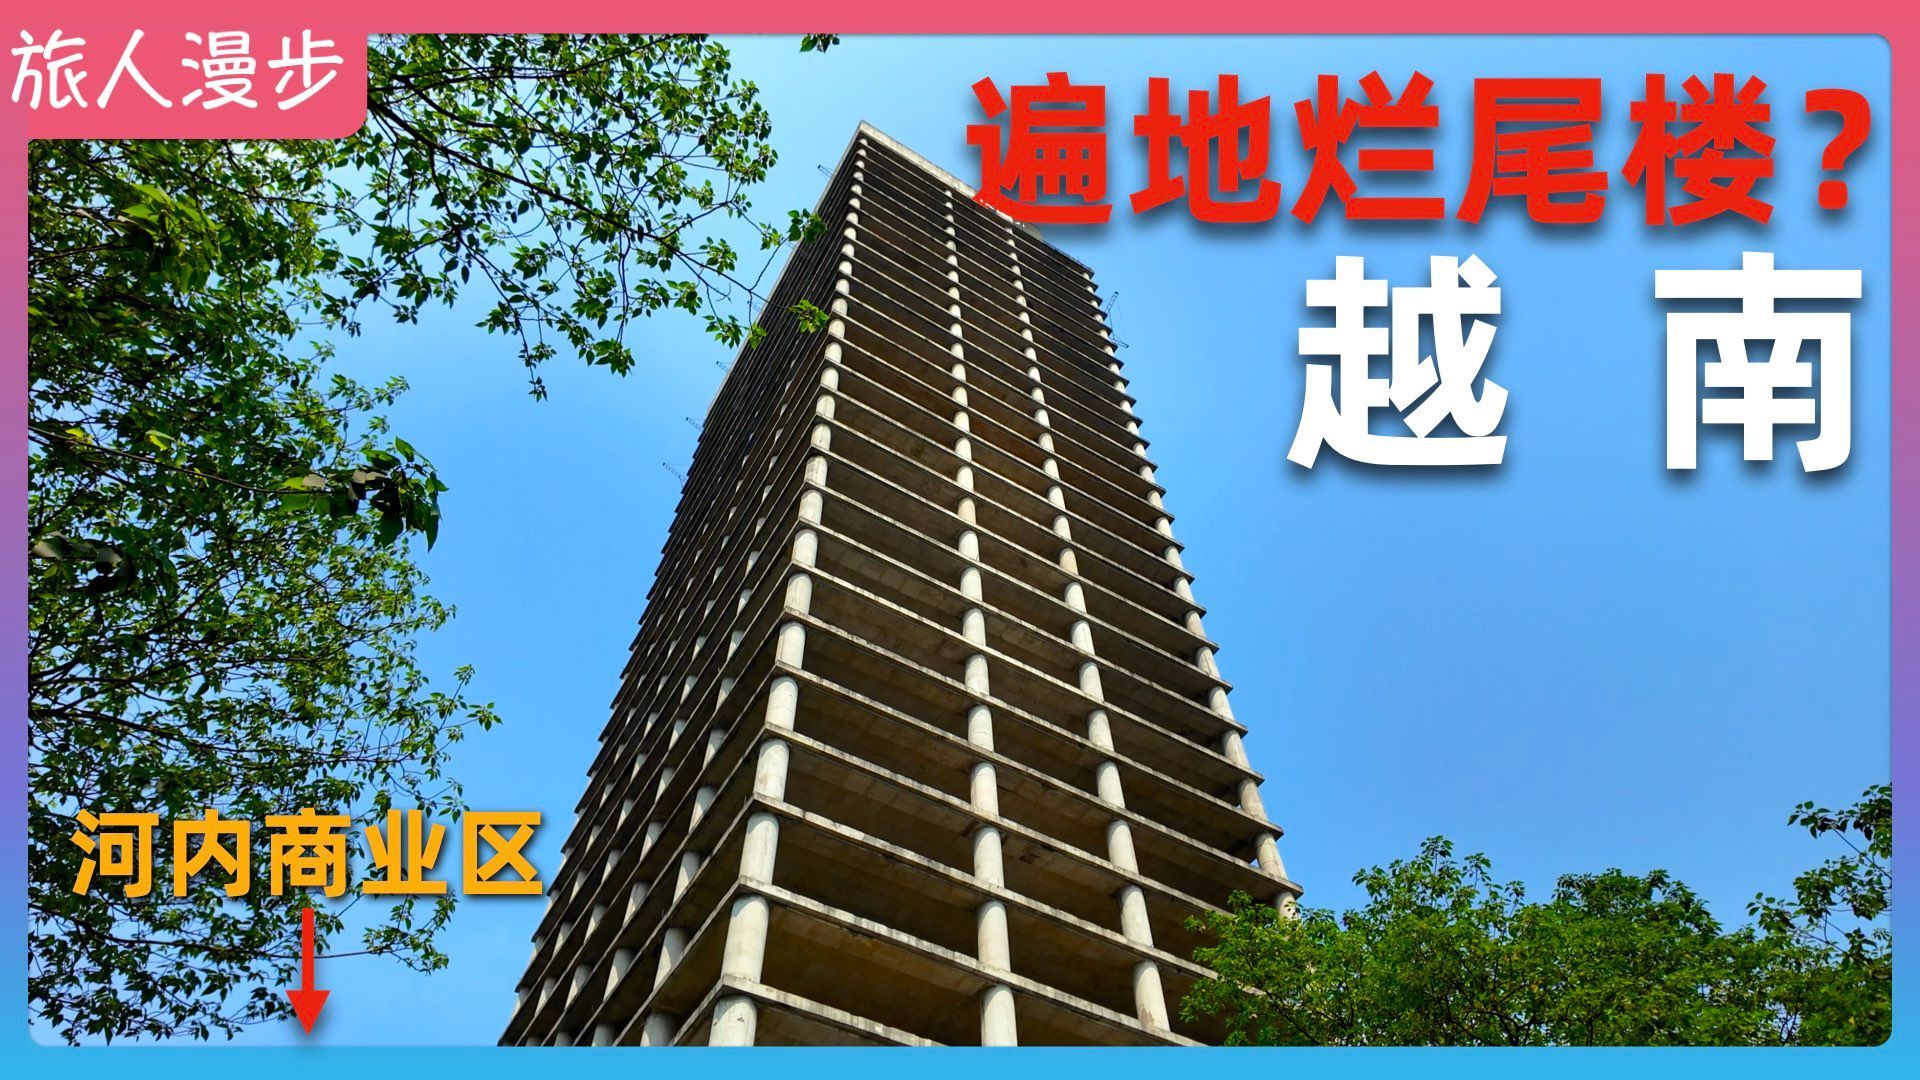 实拍越南河内烂尾楼，发现“贫民窟”的房子价格 比豪华公寓还贵？